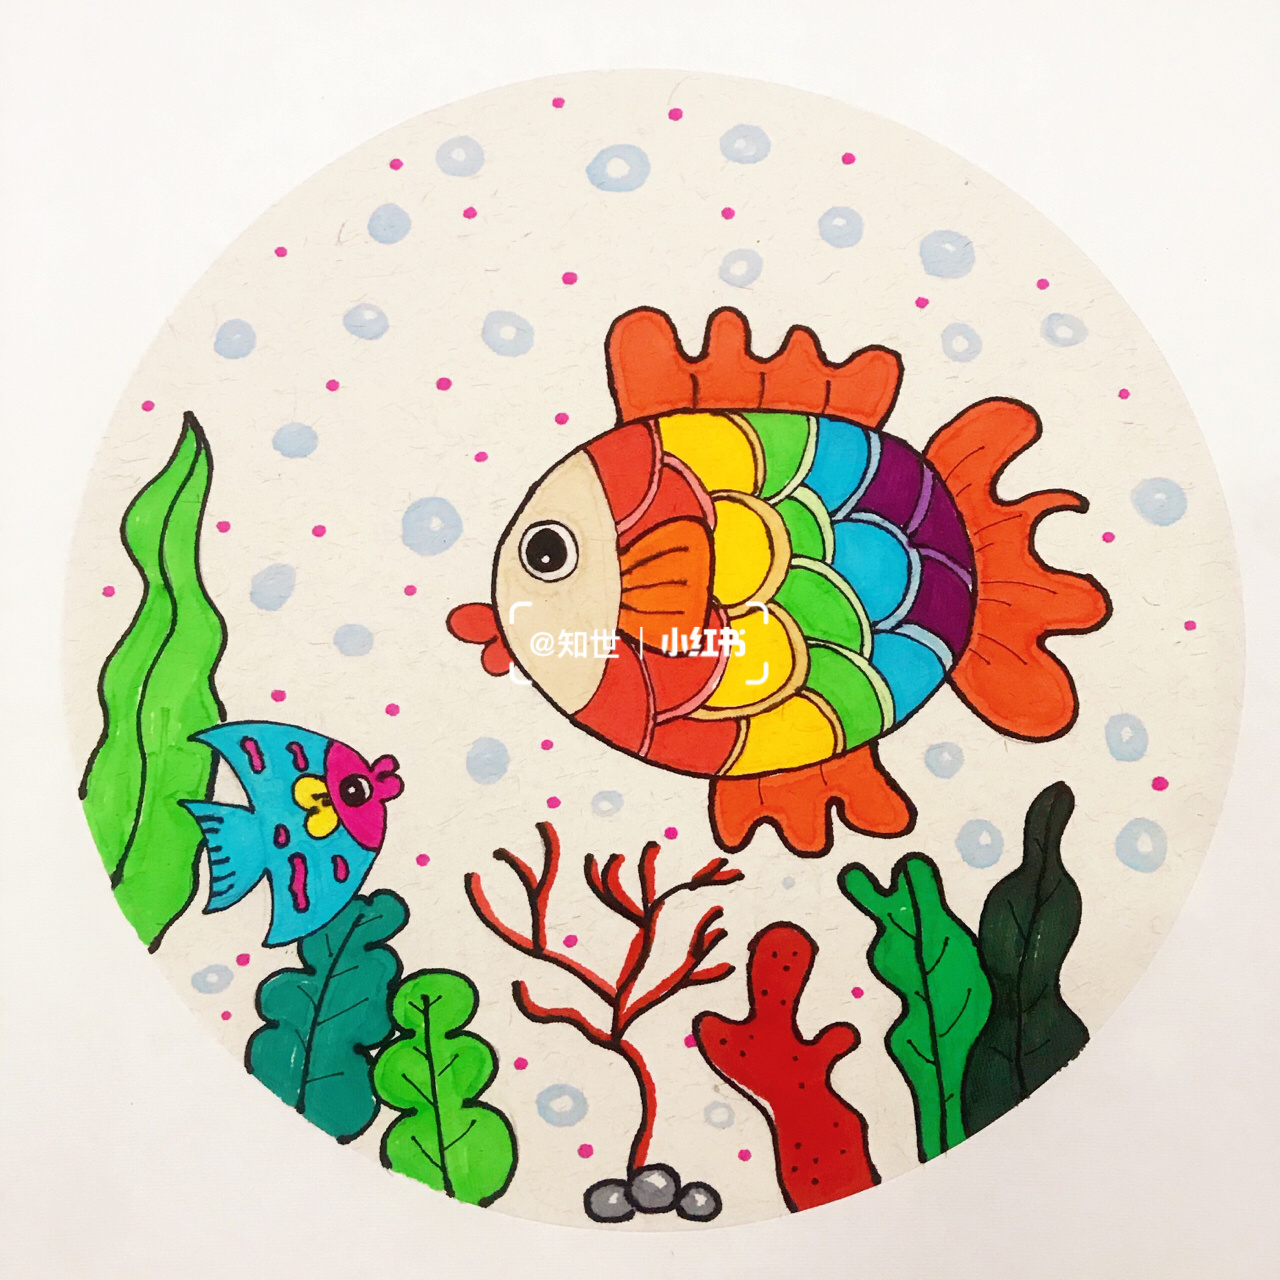 儿童画—彩虹鱼 主题:彩虹鱼 课程类型:形象感知系 适合年龄:5